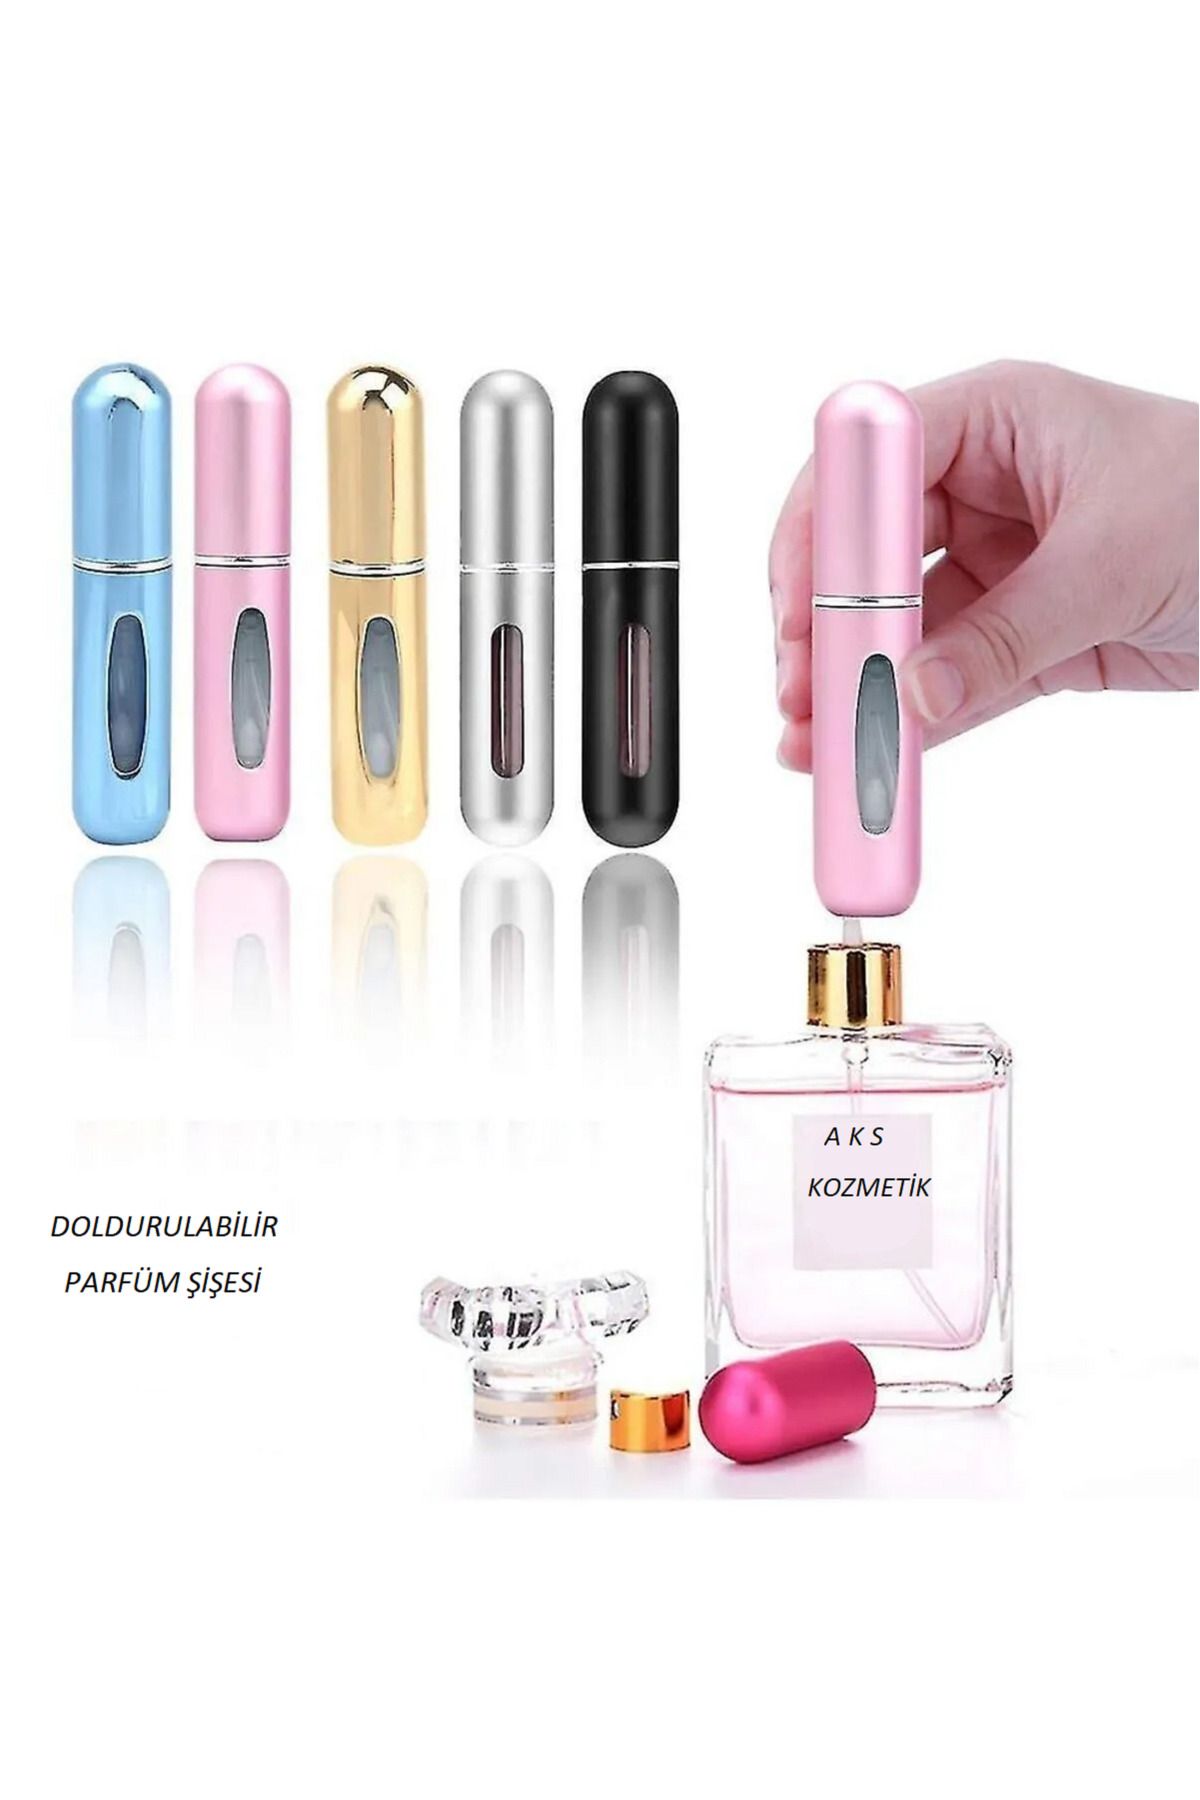 aks kozmetik Parfüm Şişesinden Çanta Içi Mini Doldurulabilir Seyahat Cep Yedek Parfüm Şişesi 5 ml